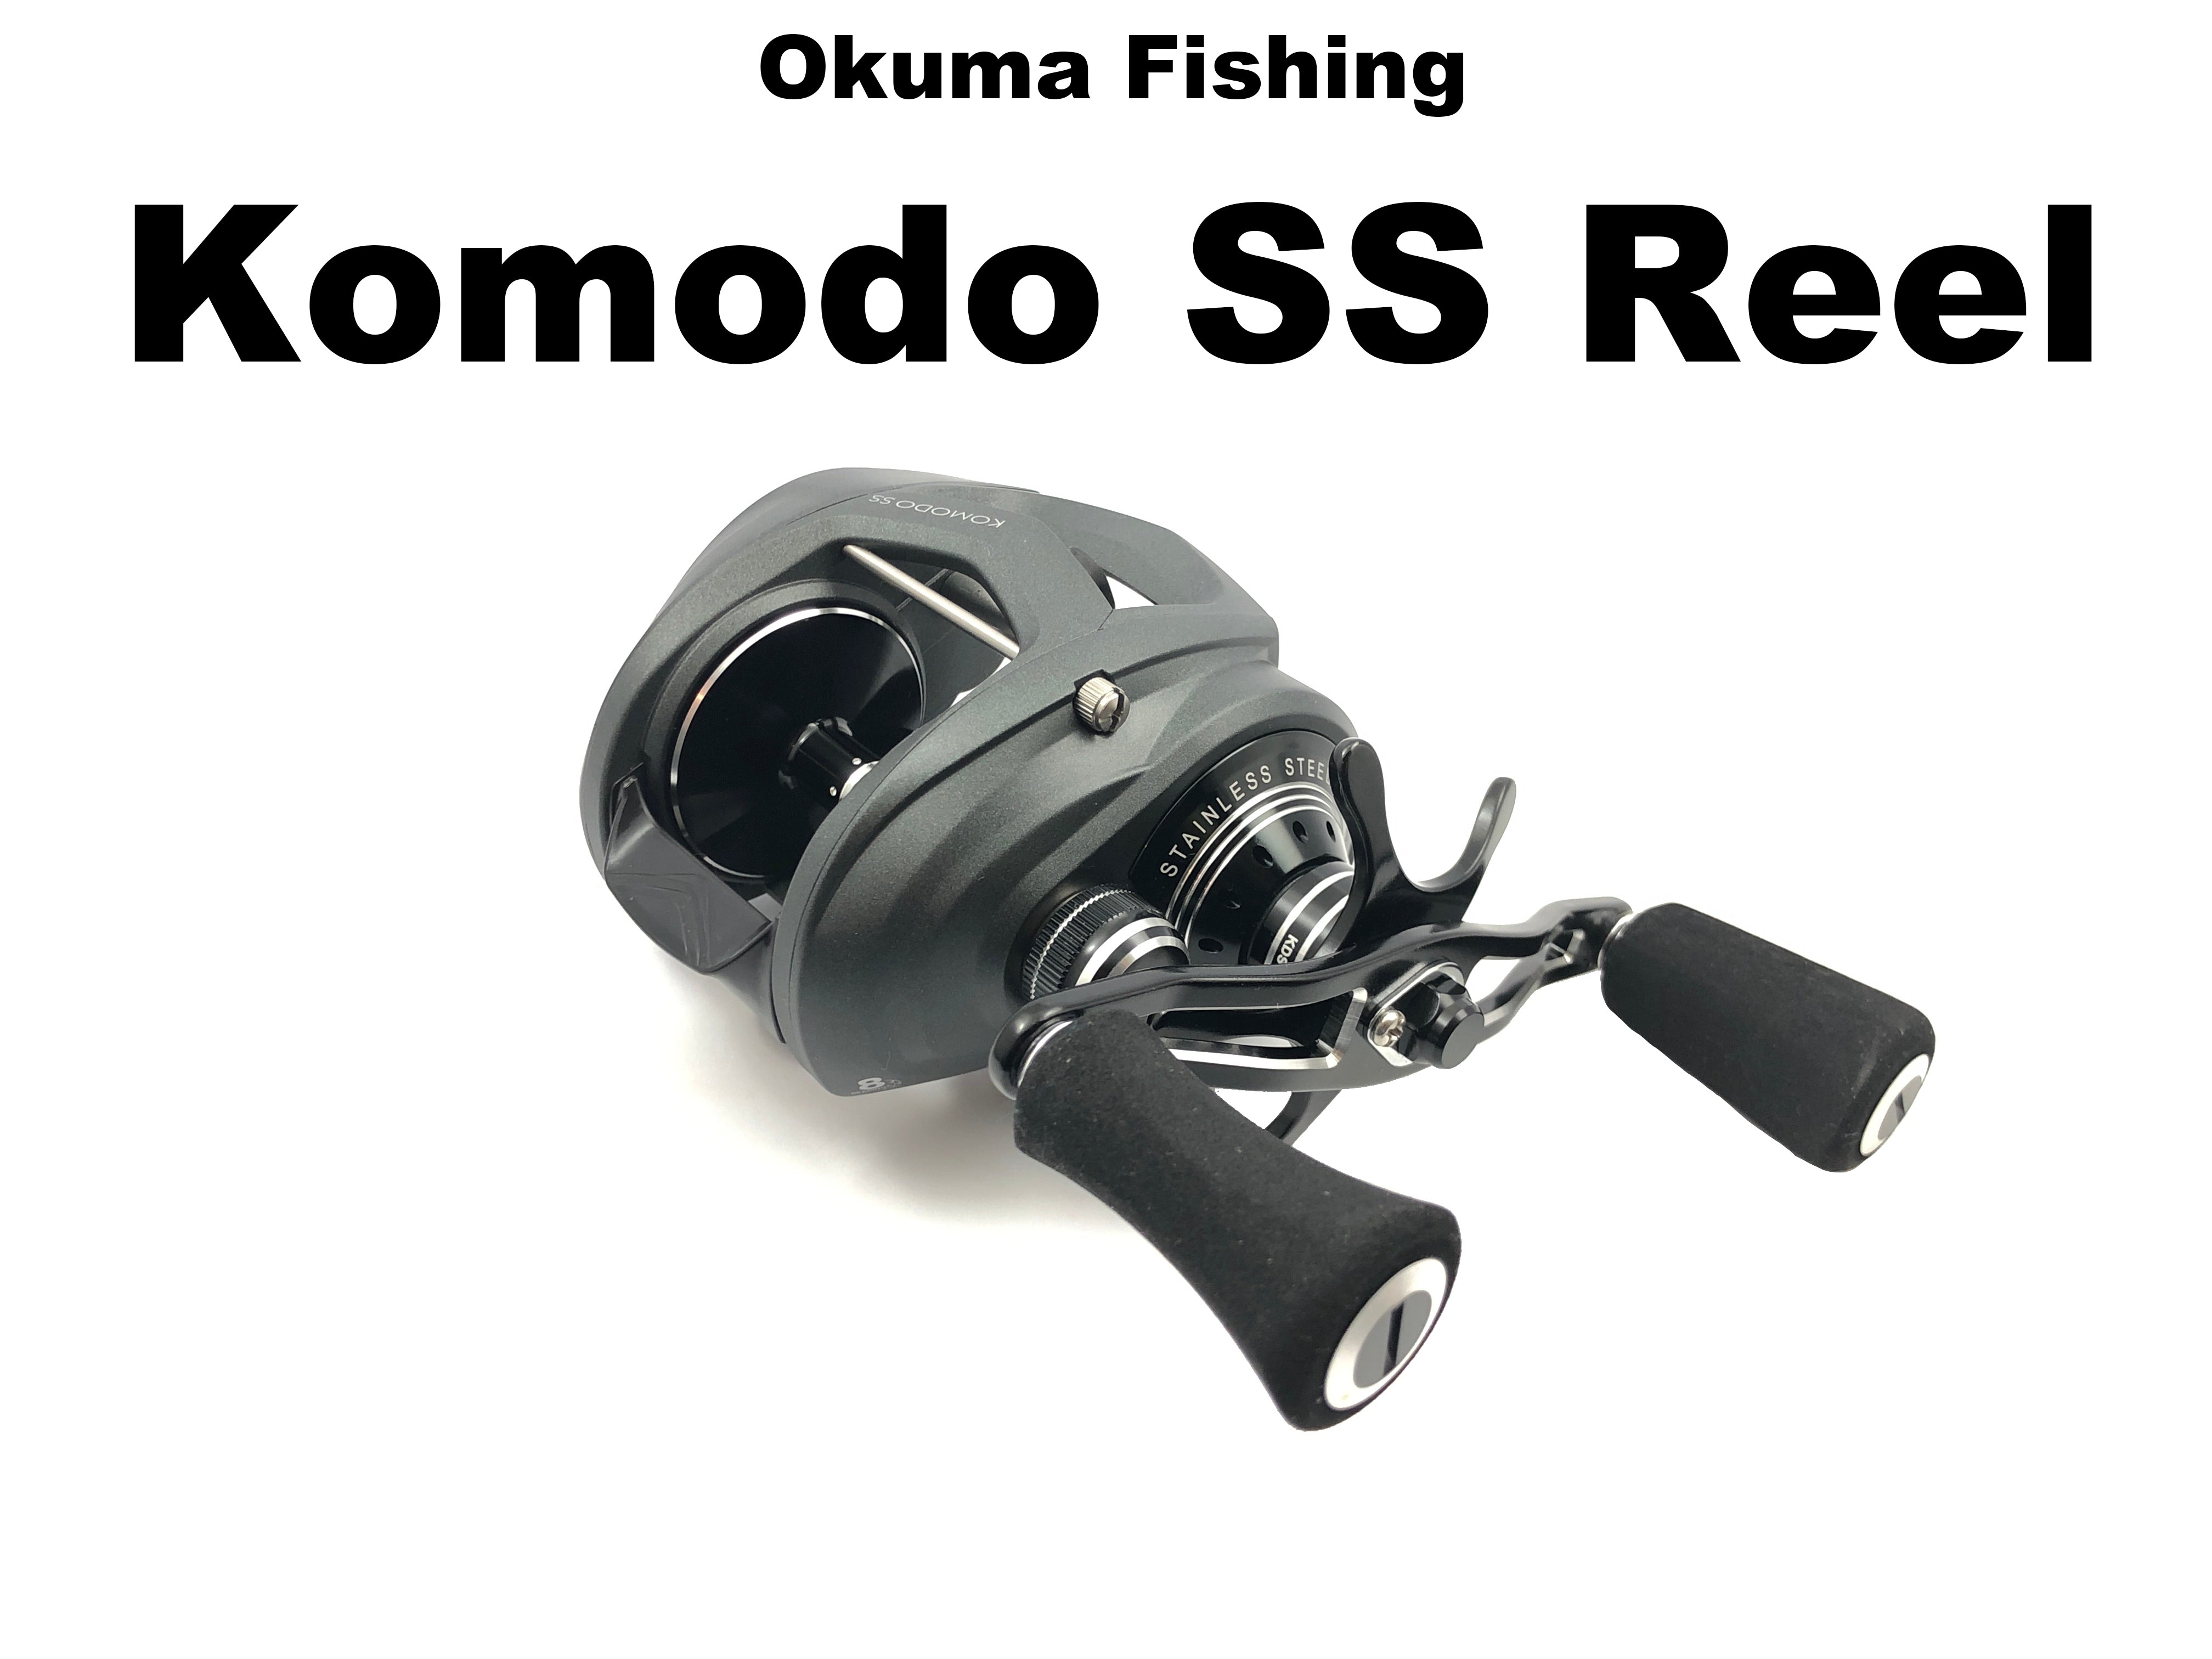 Komodo SS Baitcasting Reel - Okuma